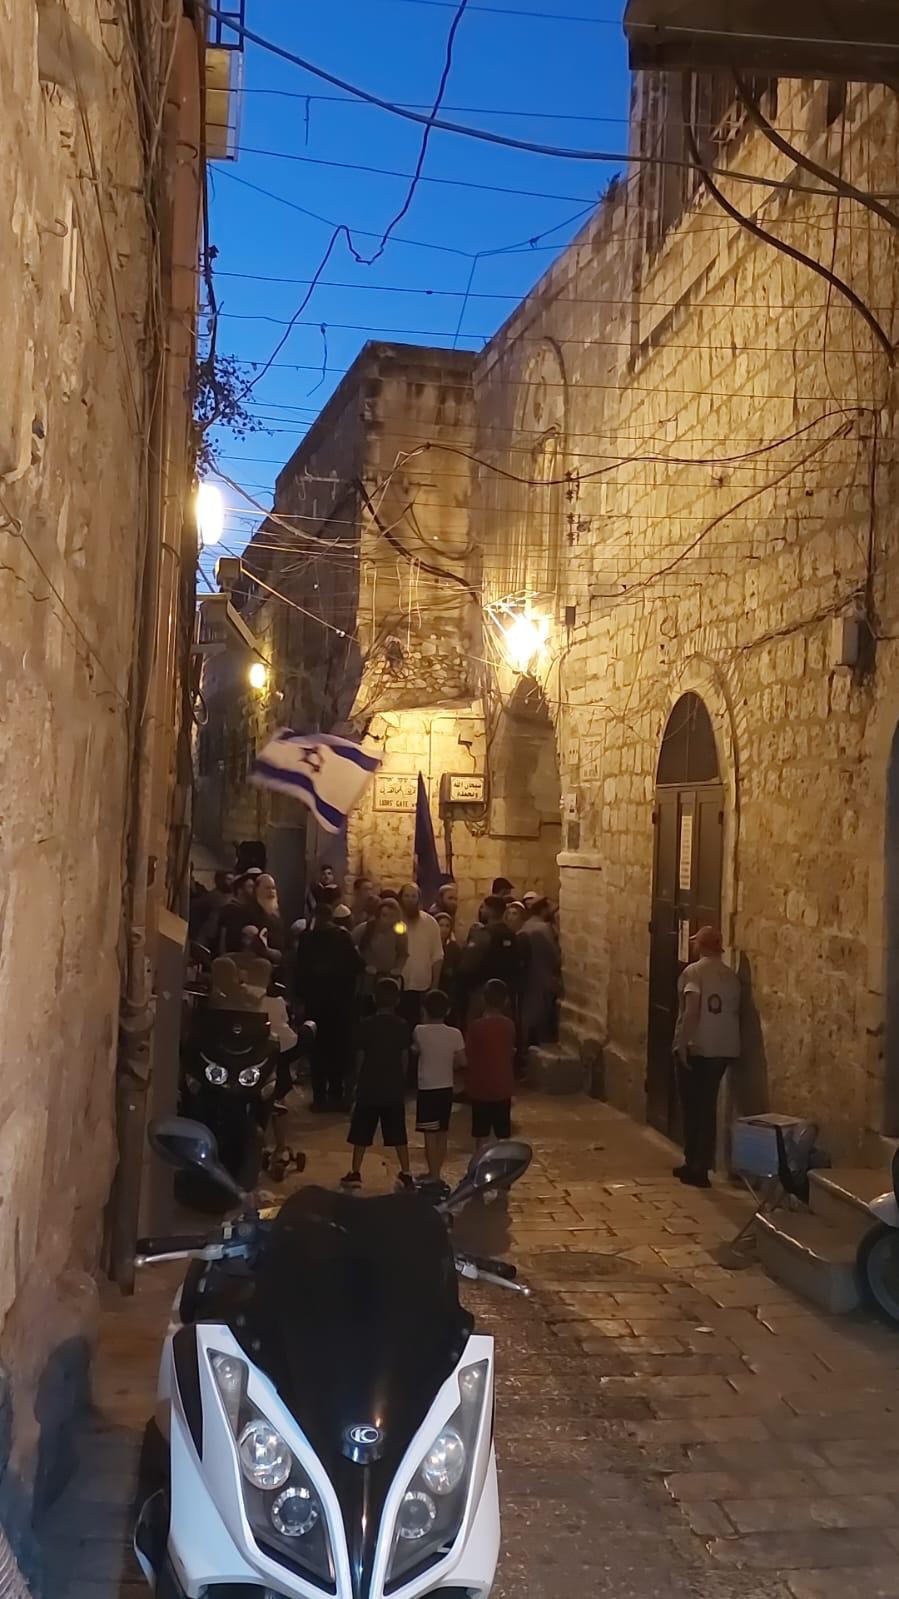 مسيرة المستوطنين الاستفزازية التي تجوب شوارع البلدة القديمة في القدس المحتلة.1.jpg